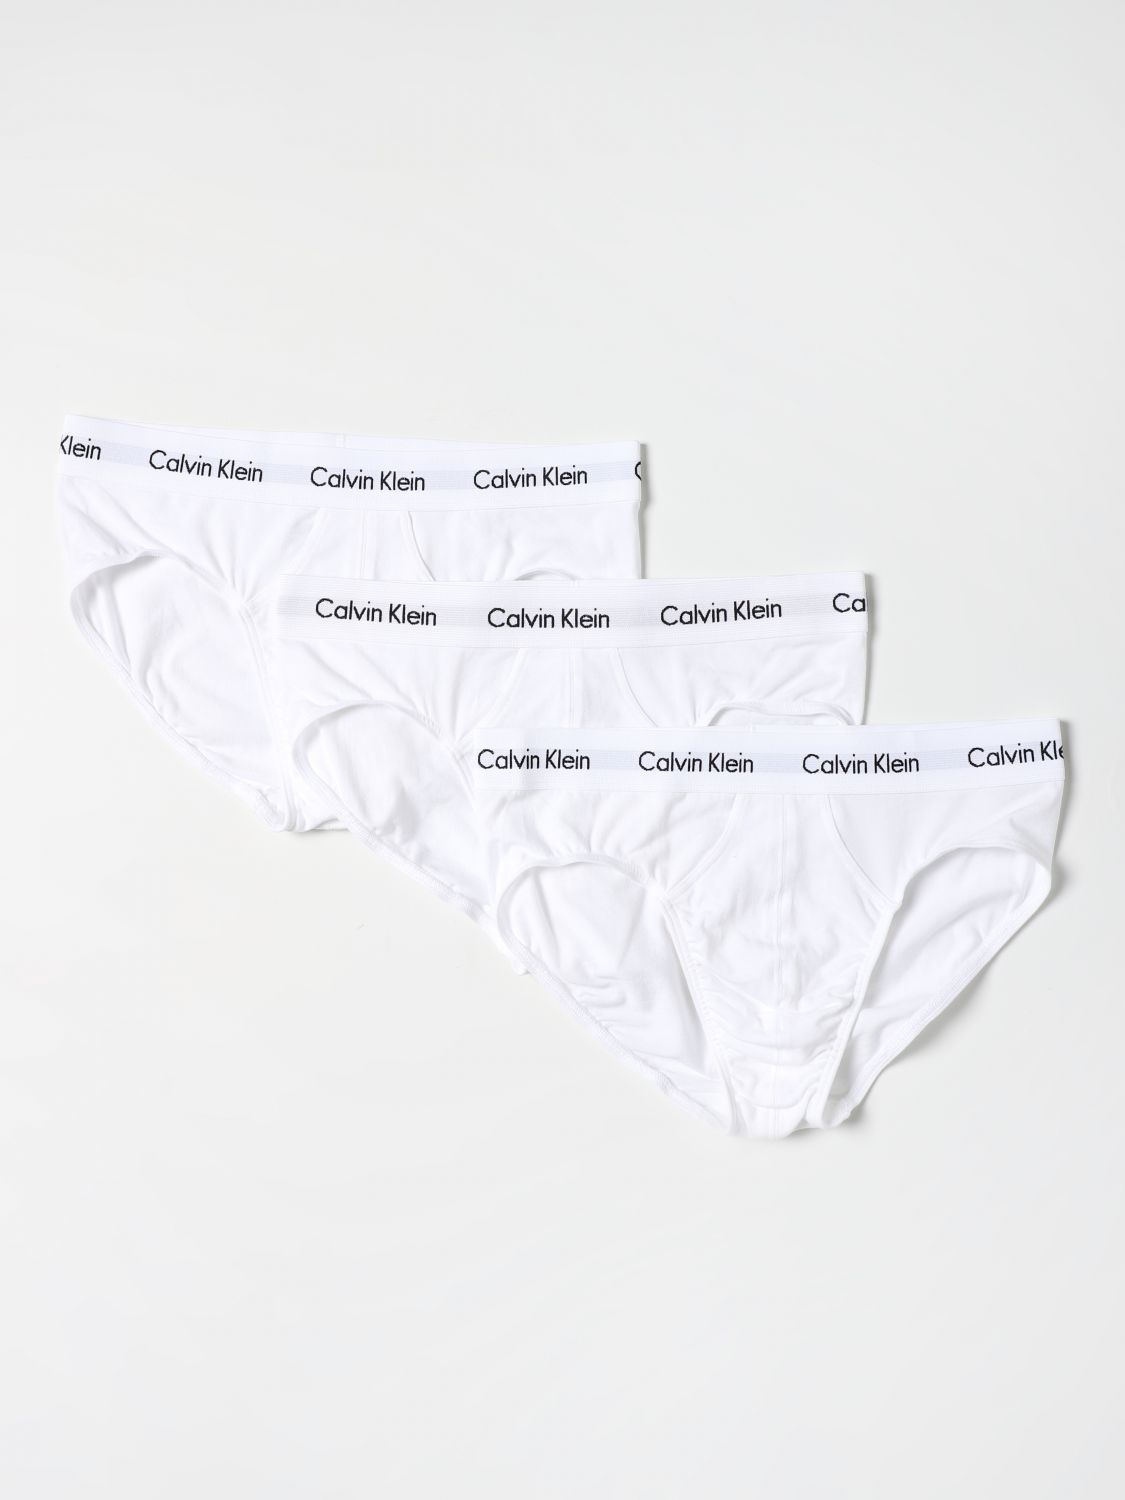 Giglio.com Uomo Abbigliamento Intimo Calze Set 3 slip in cotone 